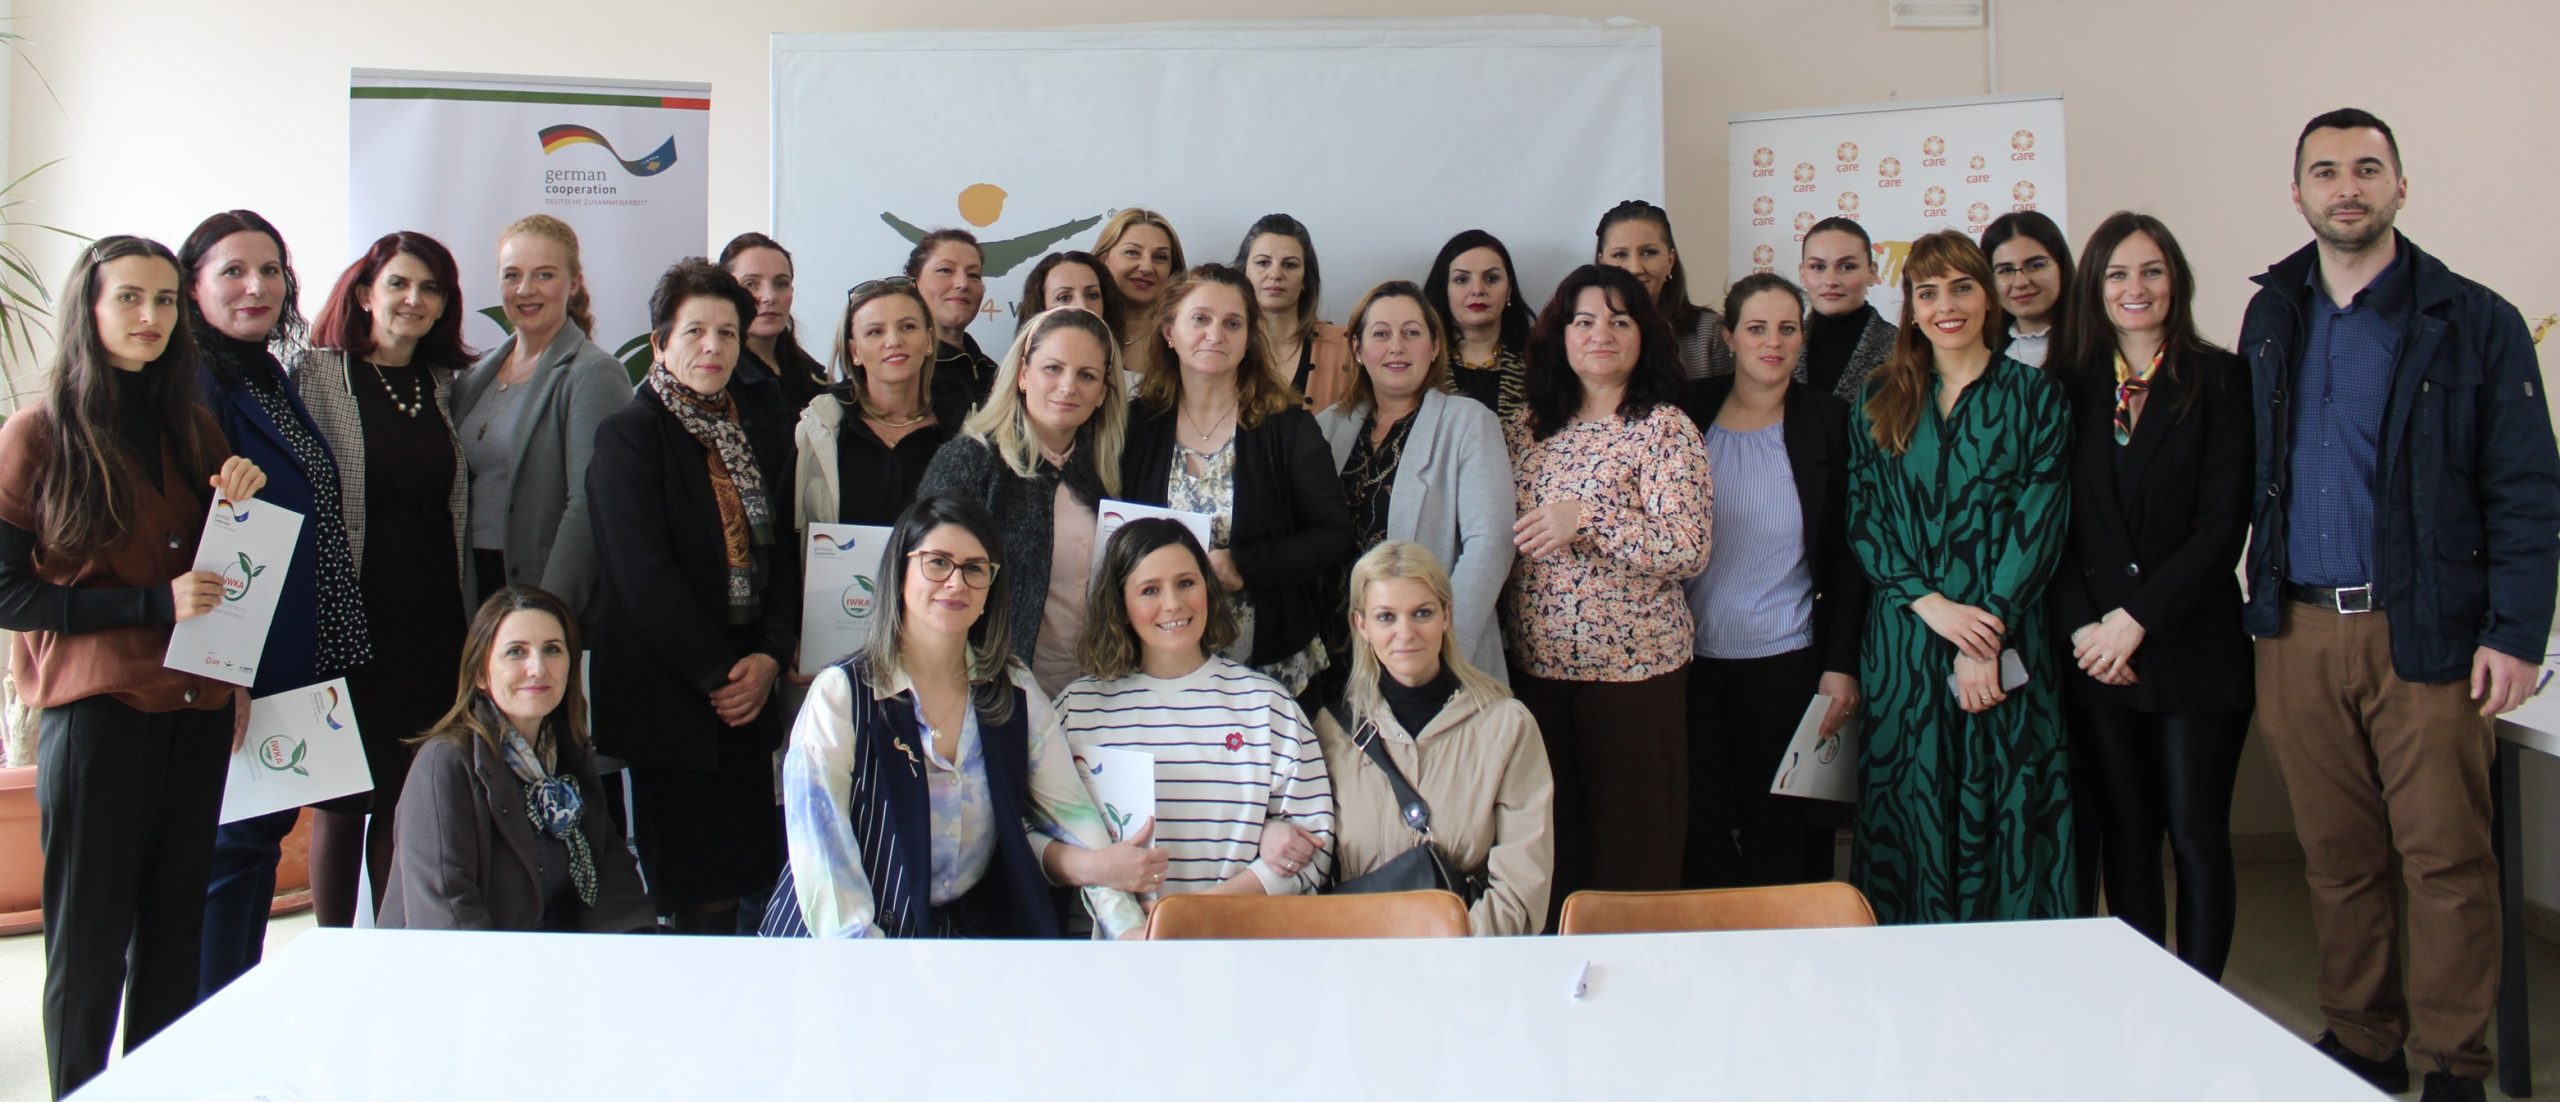 Në kuadër të projektit “IWKA – Përfshirja e grave në agrobiznesin e Kosovës” u nënshkruan kontratat me përfitueset e granitit për bujqësi në Komunën e Prishtinës, Ferizajit, Junikut dhe Graçanicës